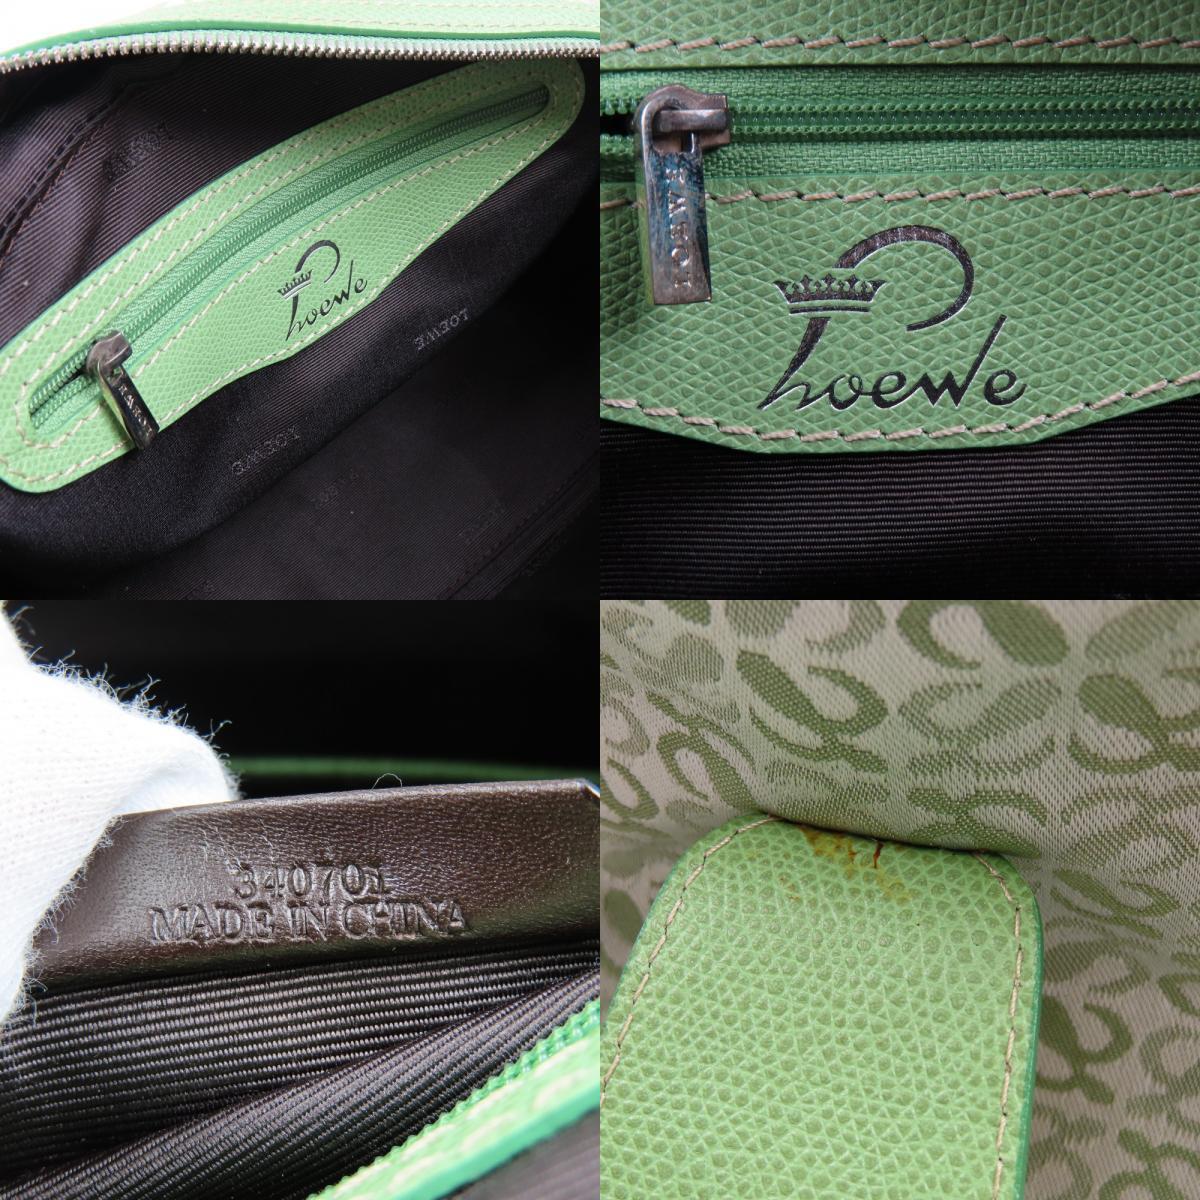 41499*1 иен старт *LOEWE Loewe превосходный товар bo- кольцо сумка дыра грамм Vintage ручная сумочка парусина кожа зеленый 